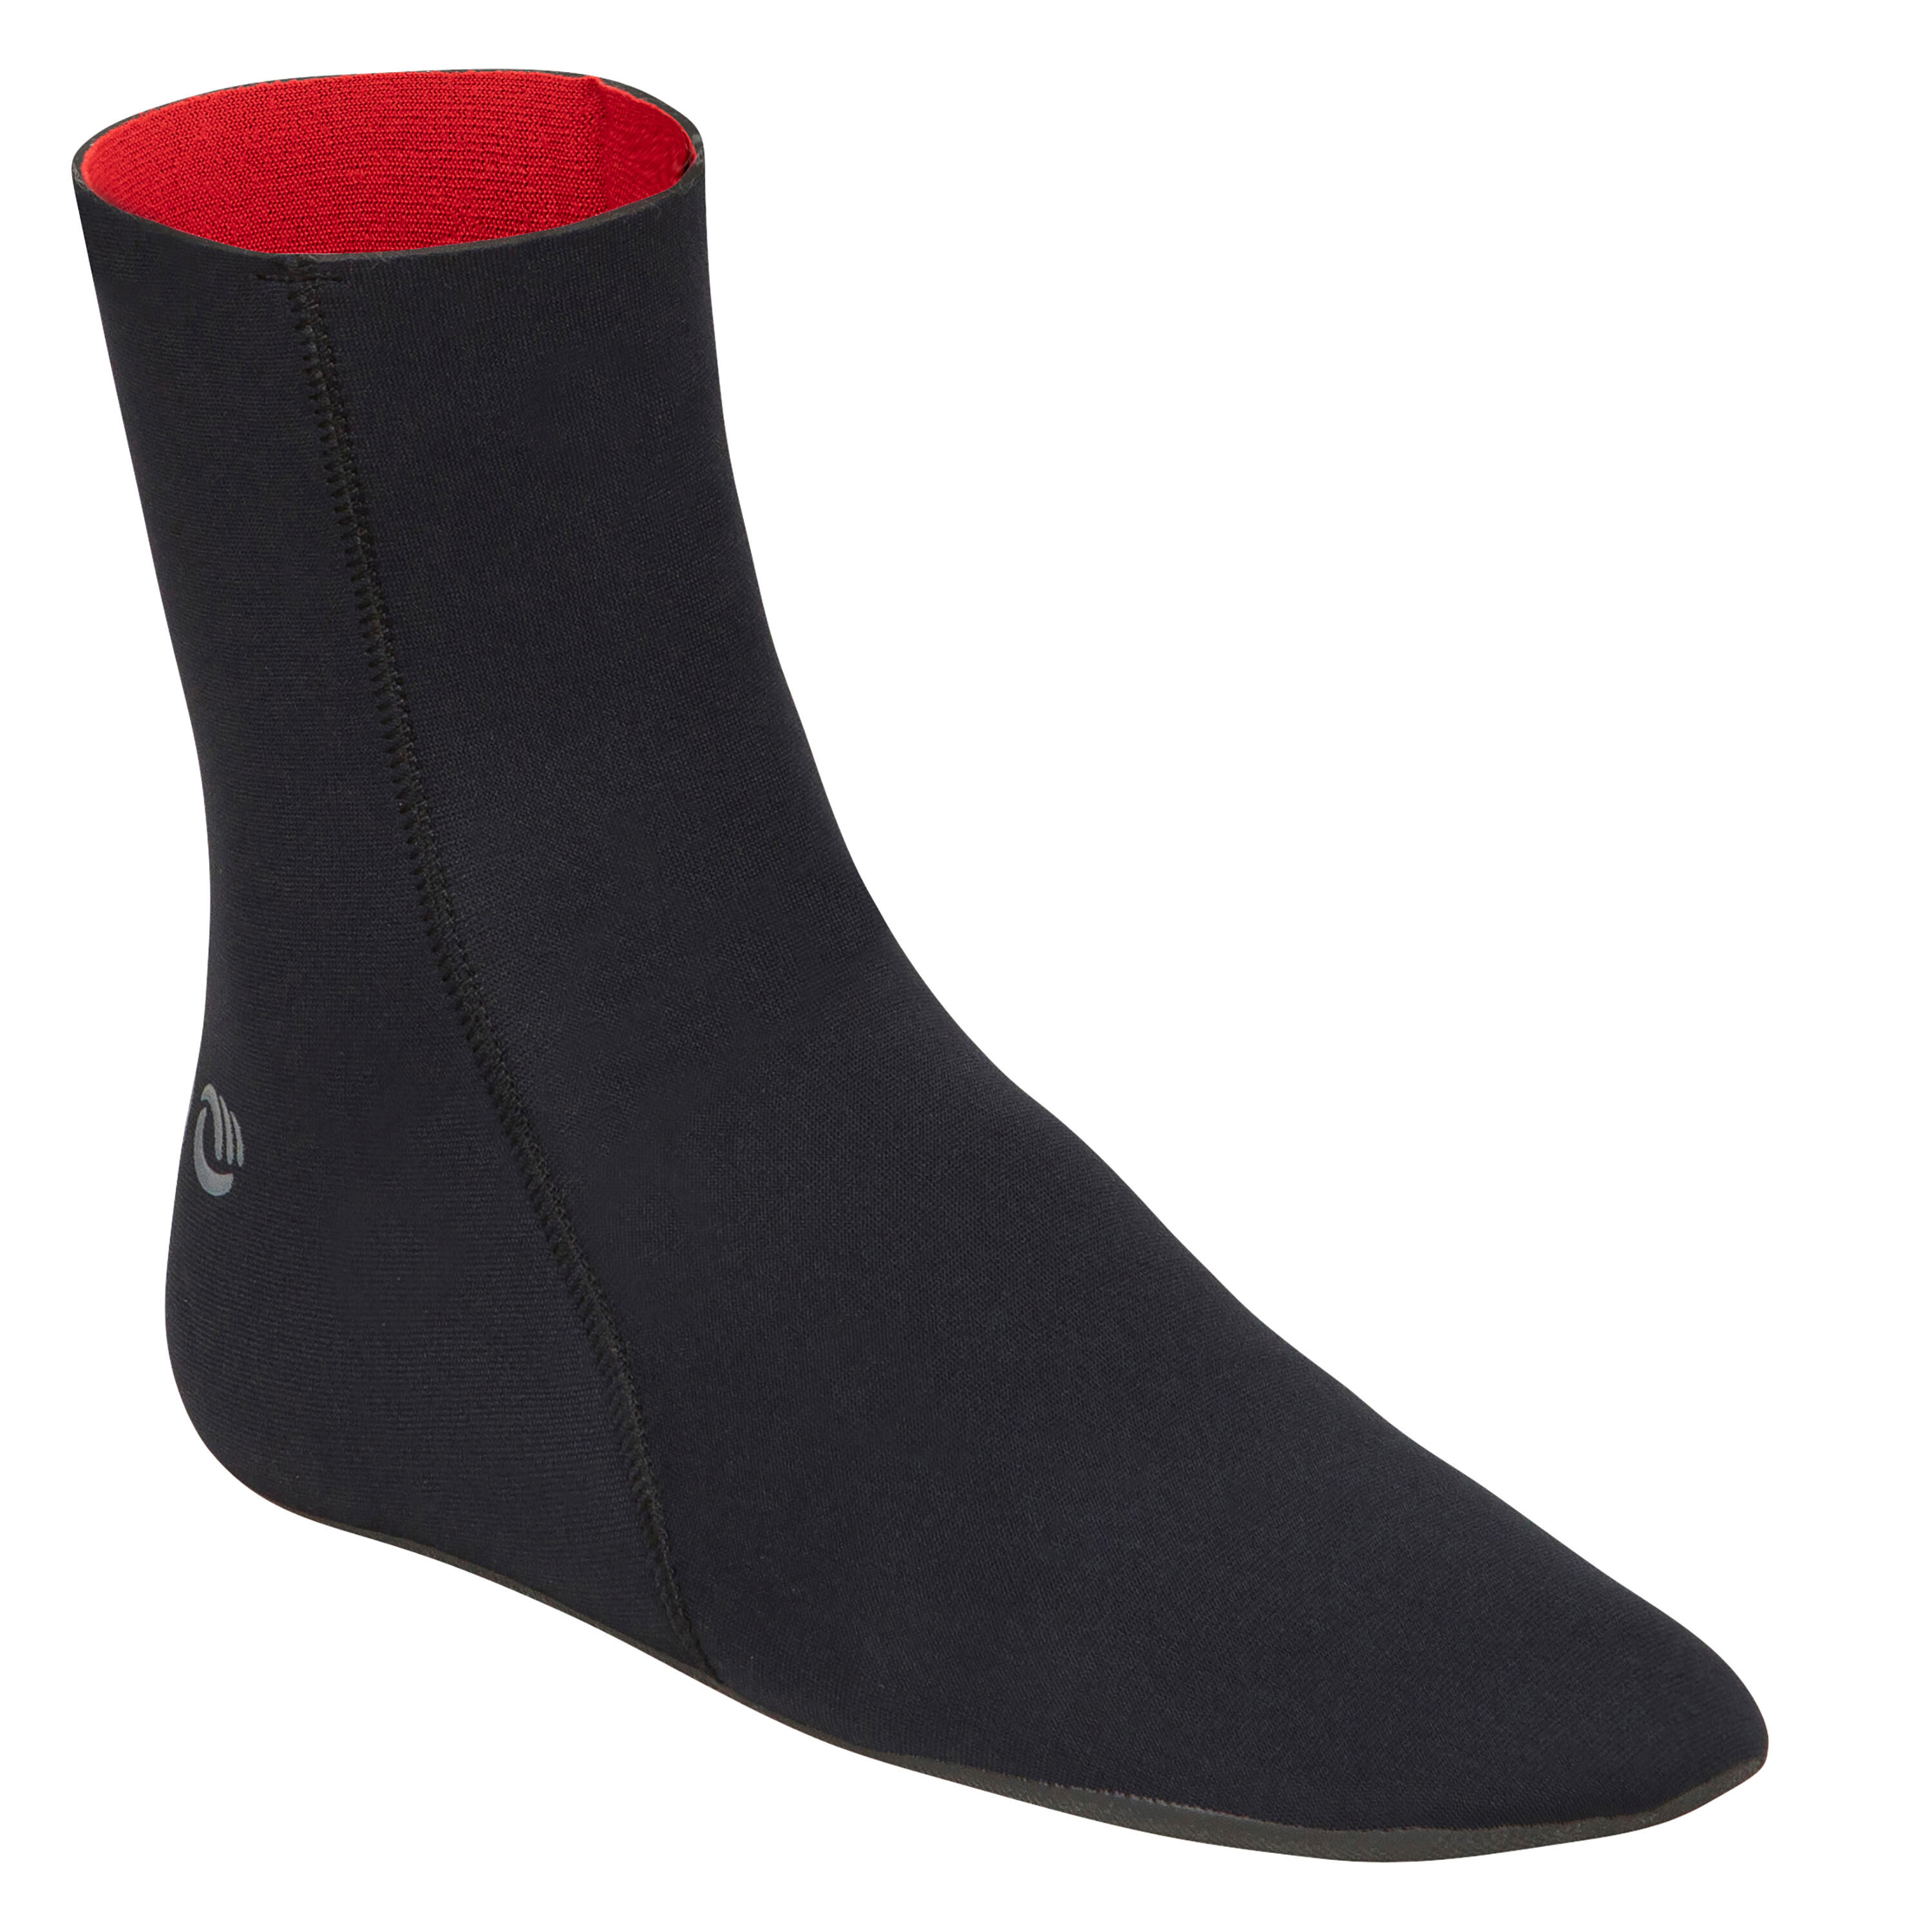 OLAIAN 3 mm Neoprene Surf Sock Boots